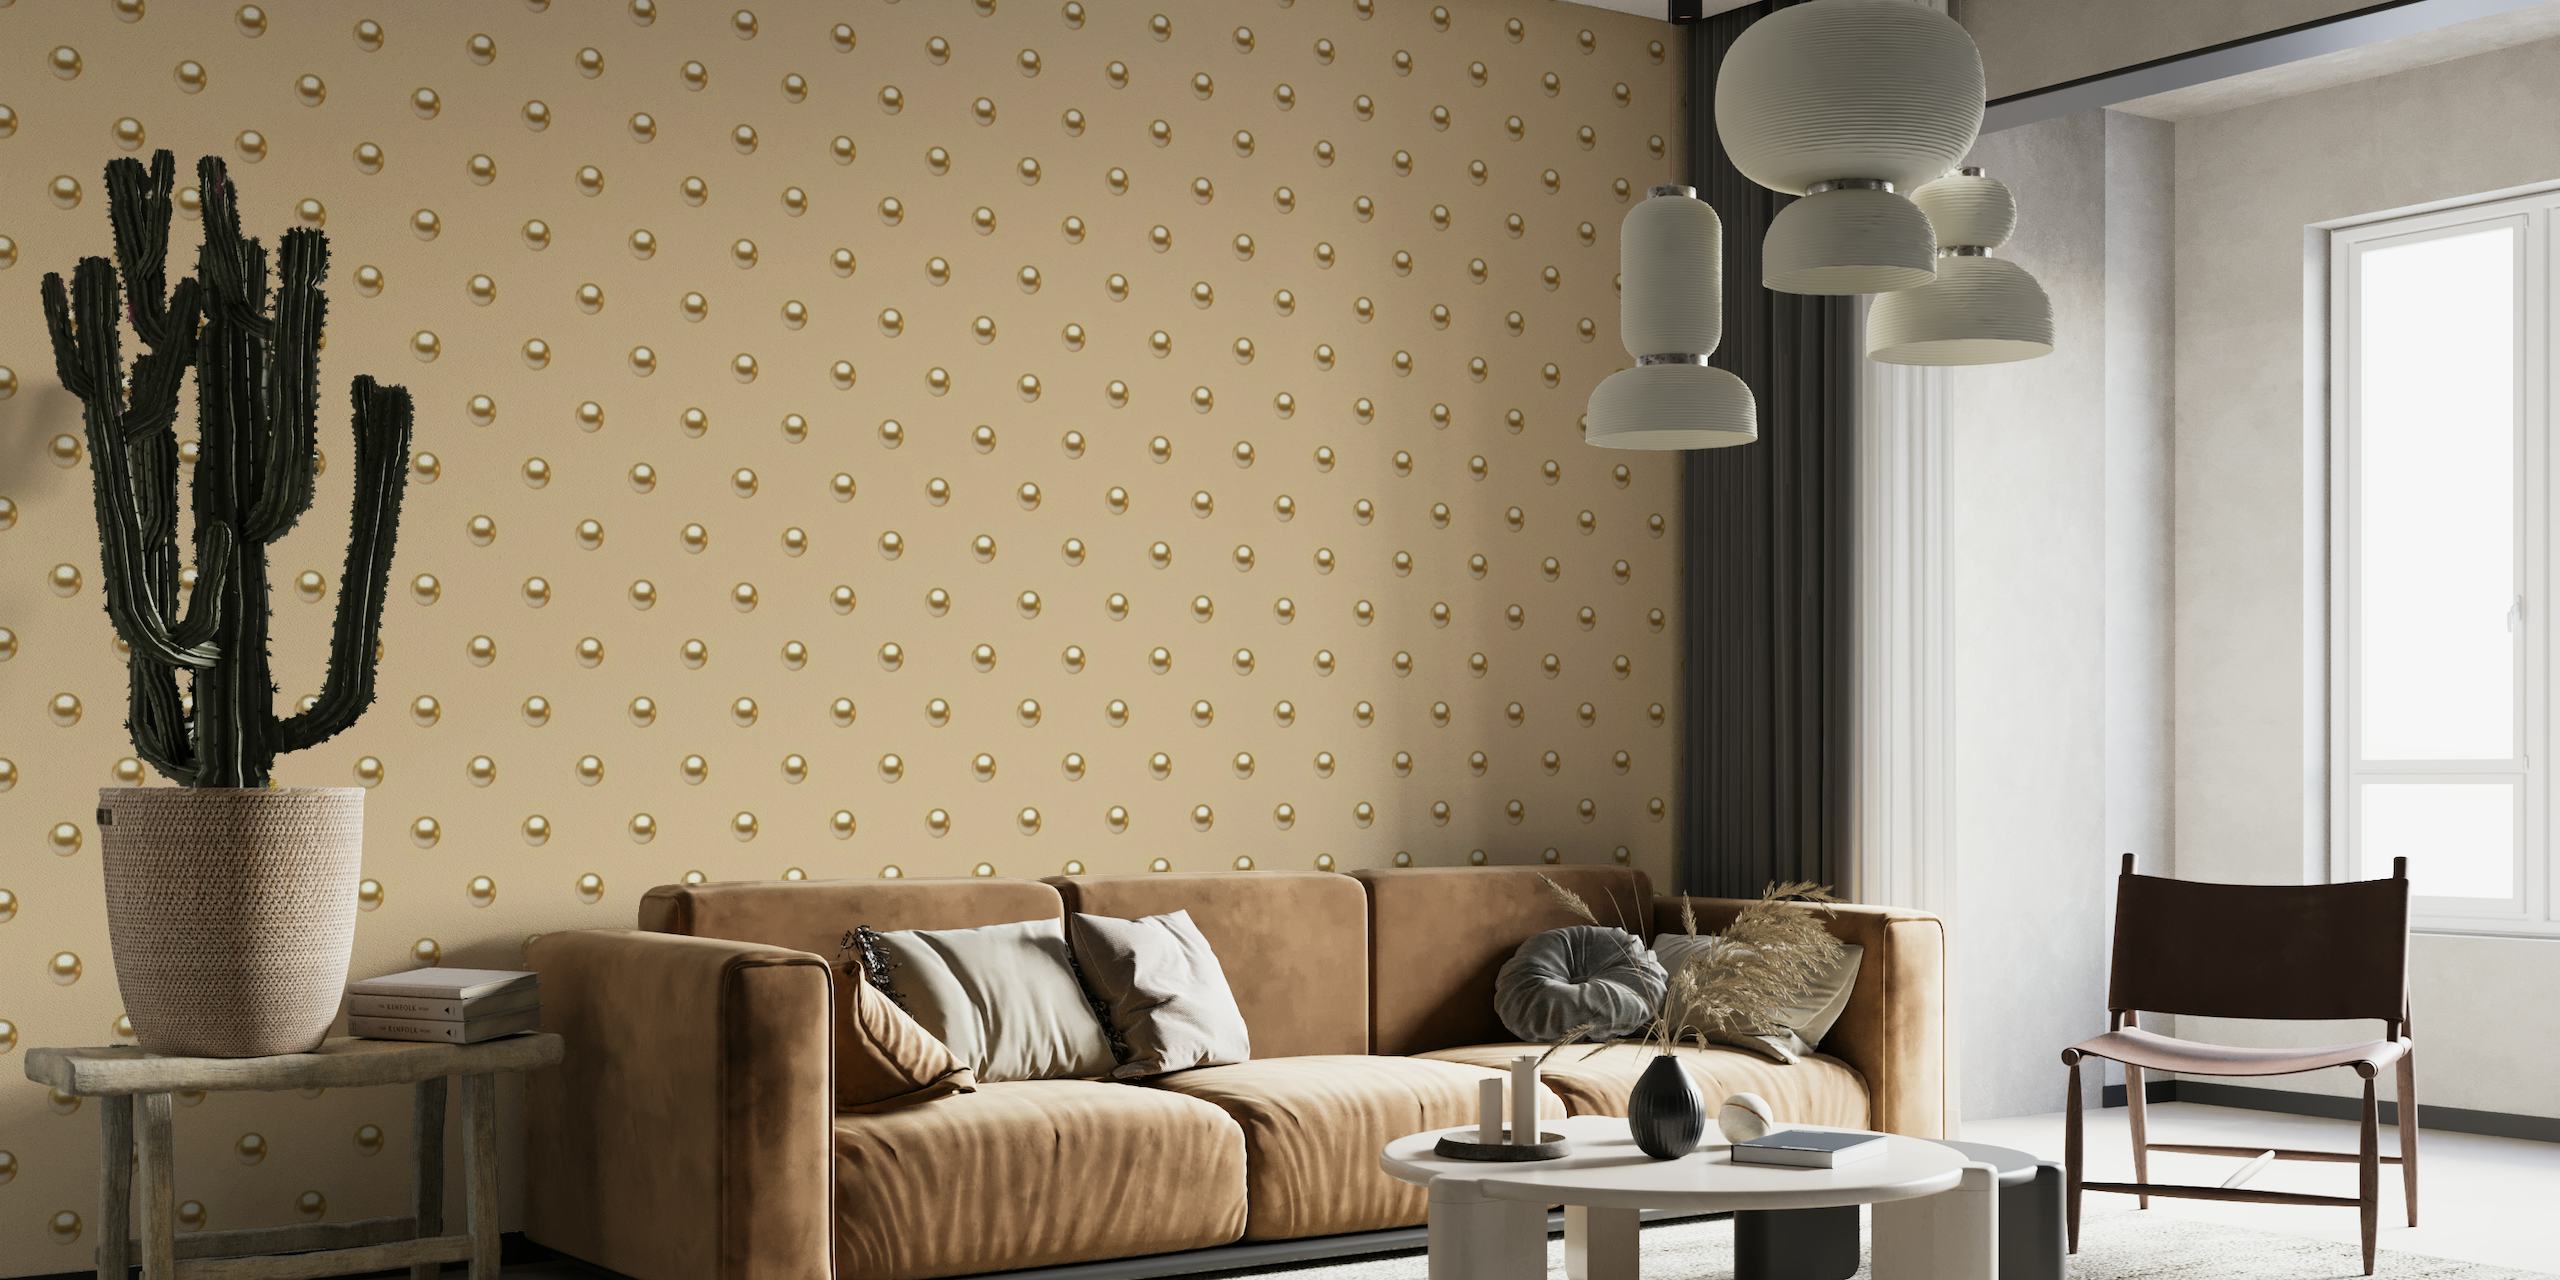 Pearl Polka Dots 4 fotobehang met glanzende stippen op een neutrale achtergrond, geschikt voor een elegant interieur